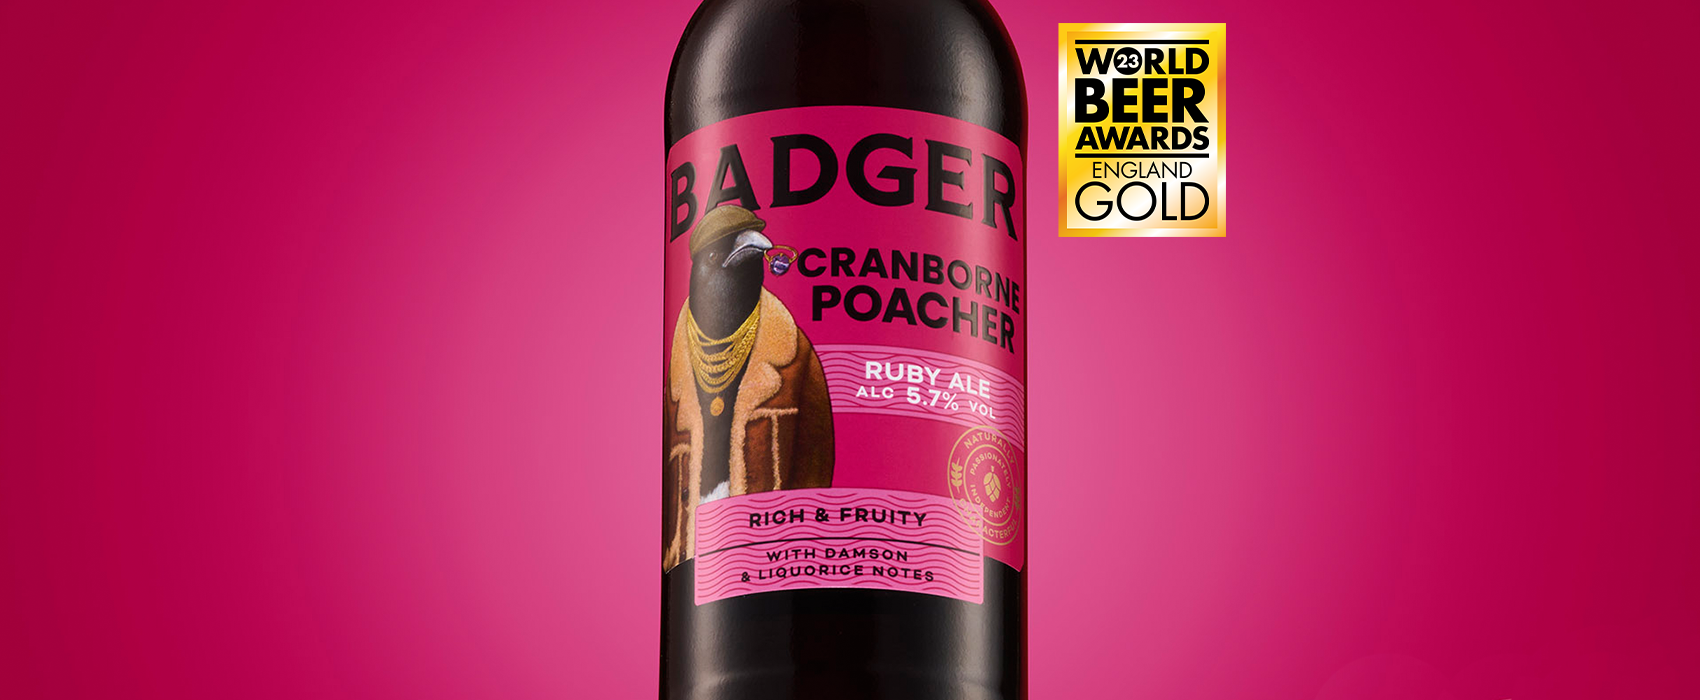 World Beer Awards 2023 | Cranborne Poacher Gold UK Winner